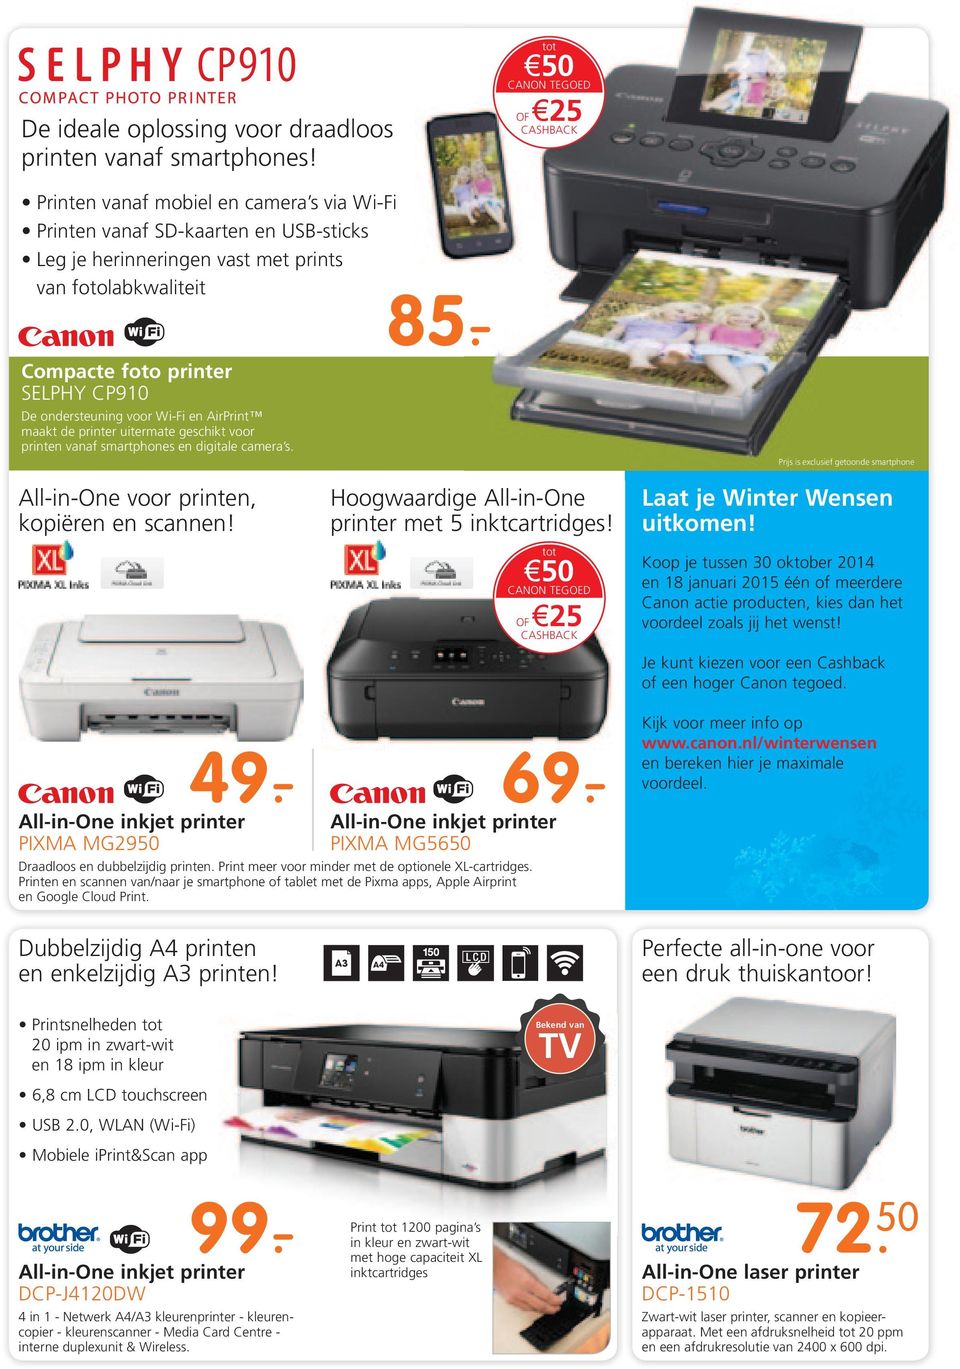 - Compacte foto printer SELPHY CP910 De ondersteuning voor Wi-Fi en AirPrint maakt de printer uitermate geschikt voor printen vanaf smartphones en digitale camera s.